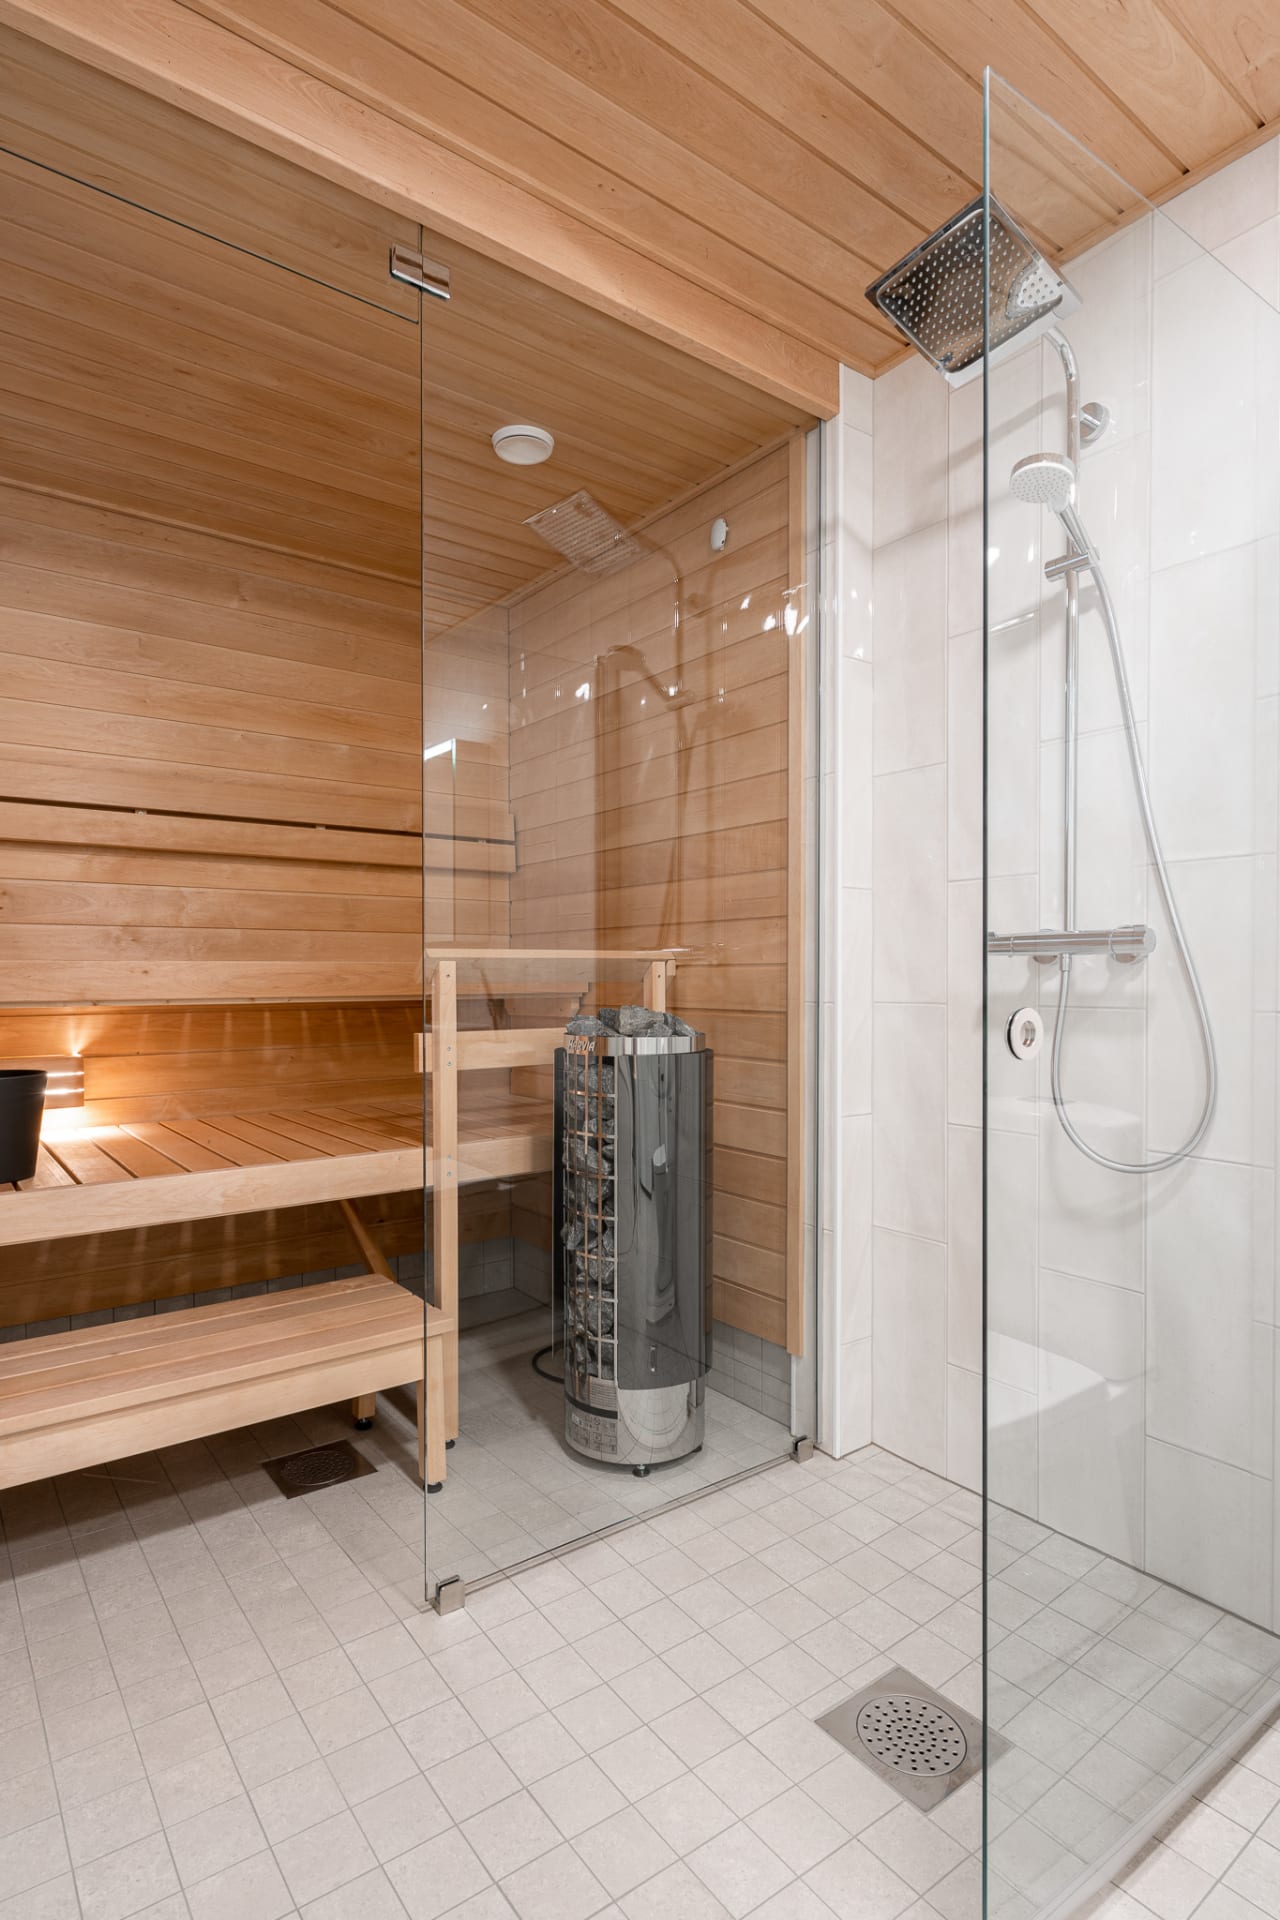 2ndhomes Tampereen kalustetut asunnot ovat monipuolisesti varusteltuja ja monessa asunnossa on oma sauna.